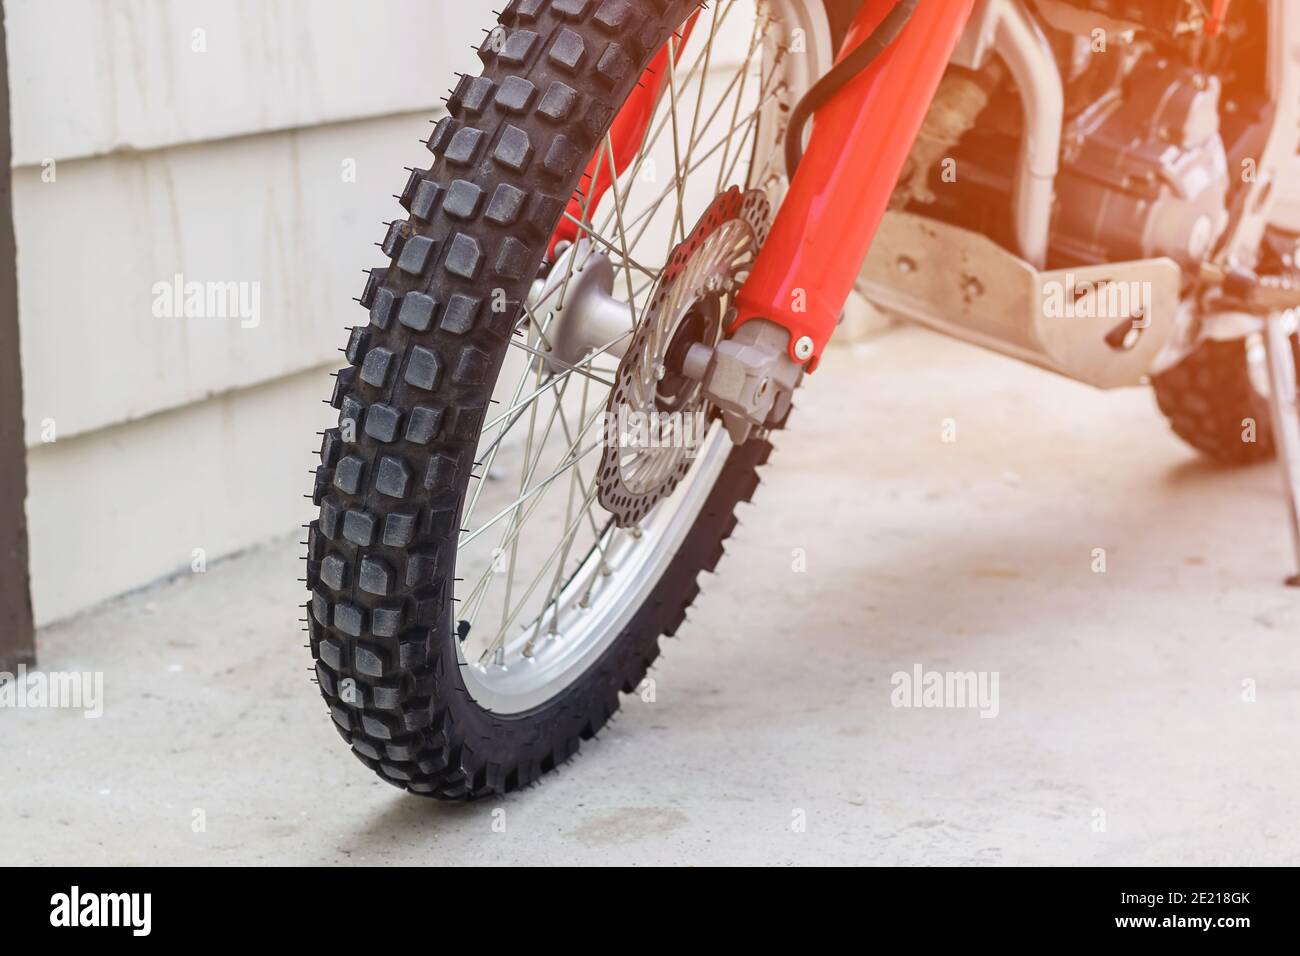 Primo piano su una ruota di fronte a una moto, industria e concetti di trasporto. Foto Stock